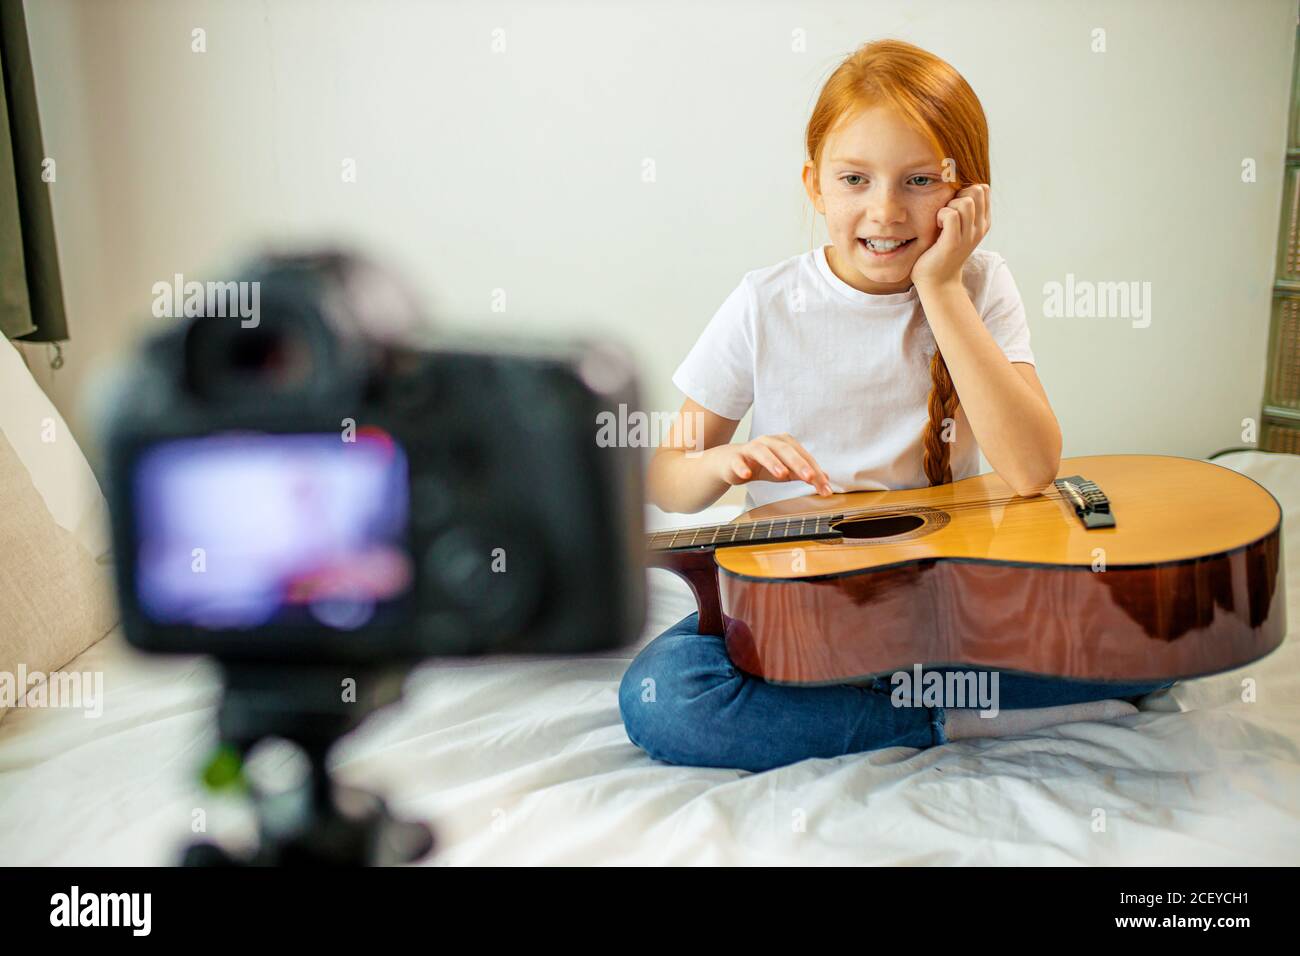 Nette liebenswert Kind blogger Gitarre spielen, sprechen bei der Kamera, wie sie gelernt, spielen akustische Gitarre, sie ist Autodidakt Stockfoto